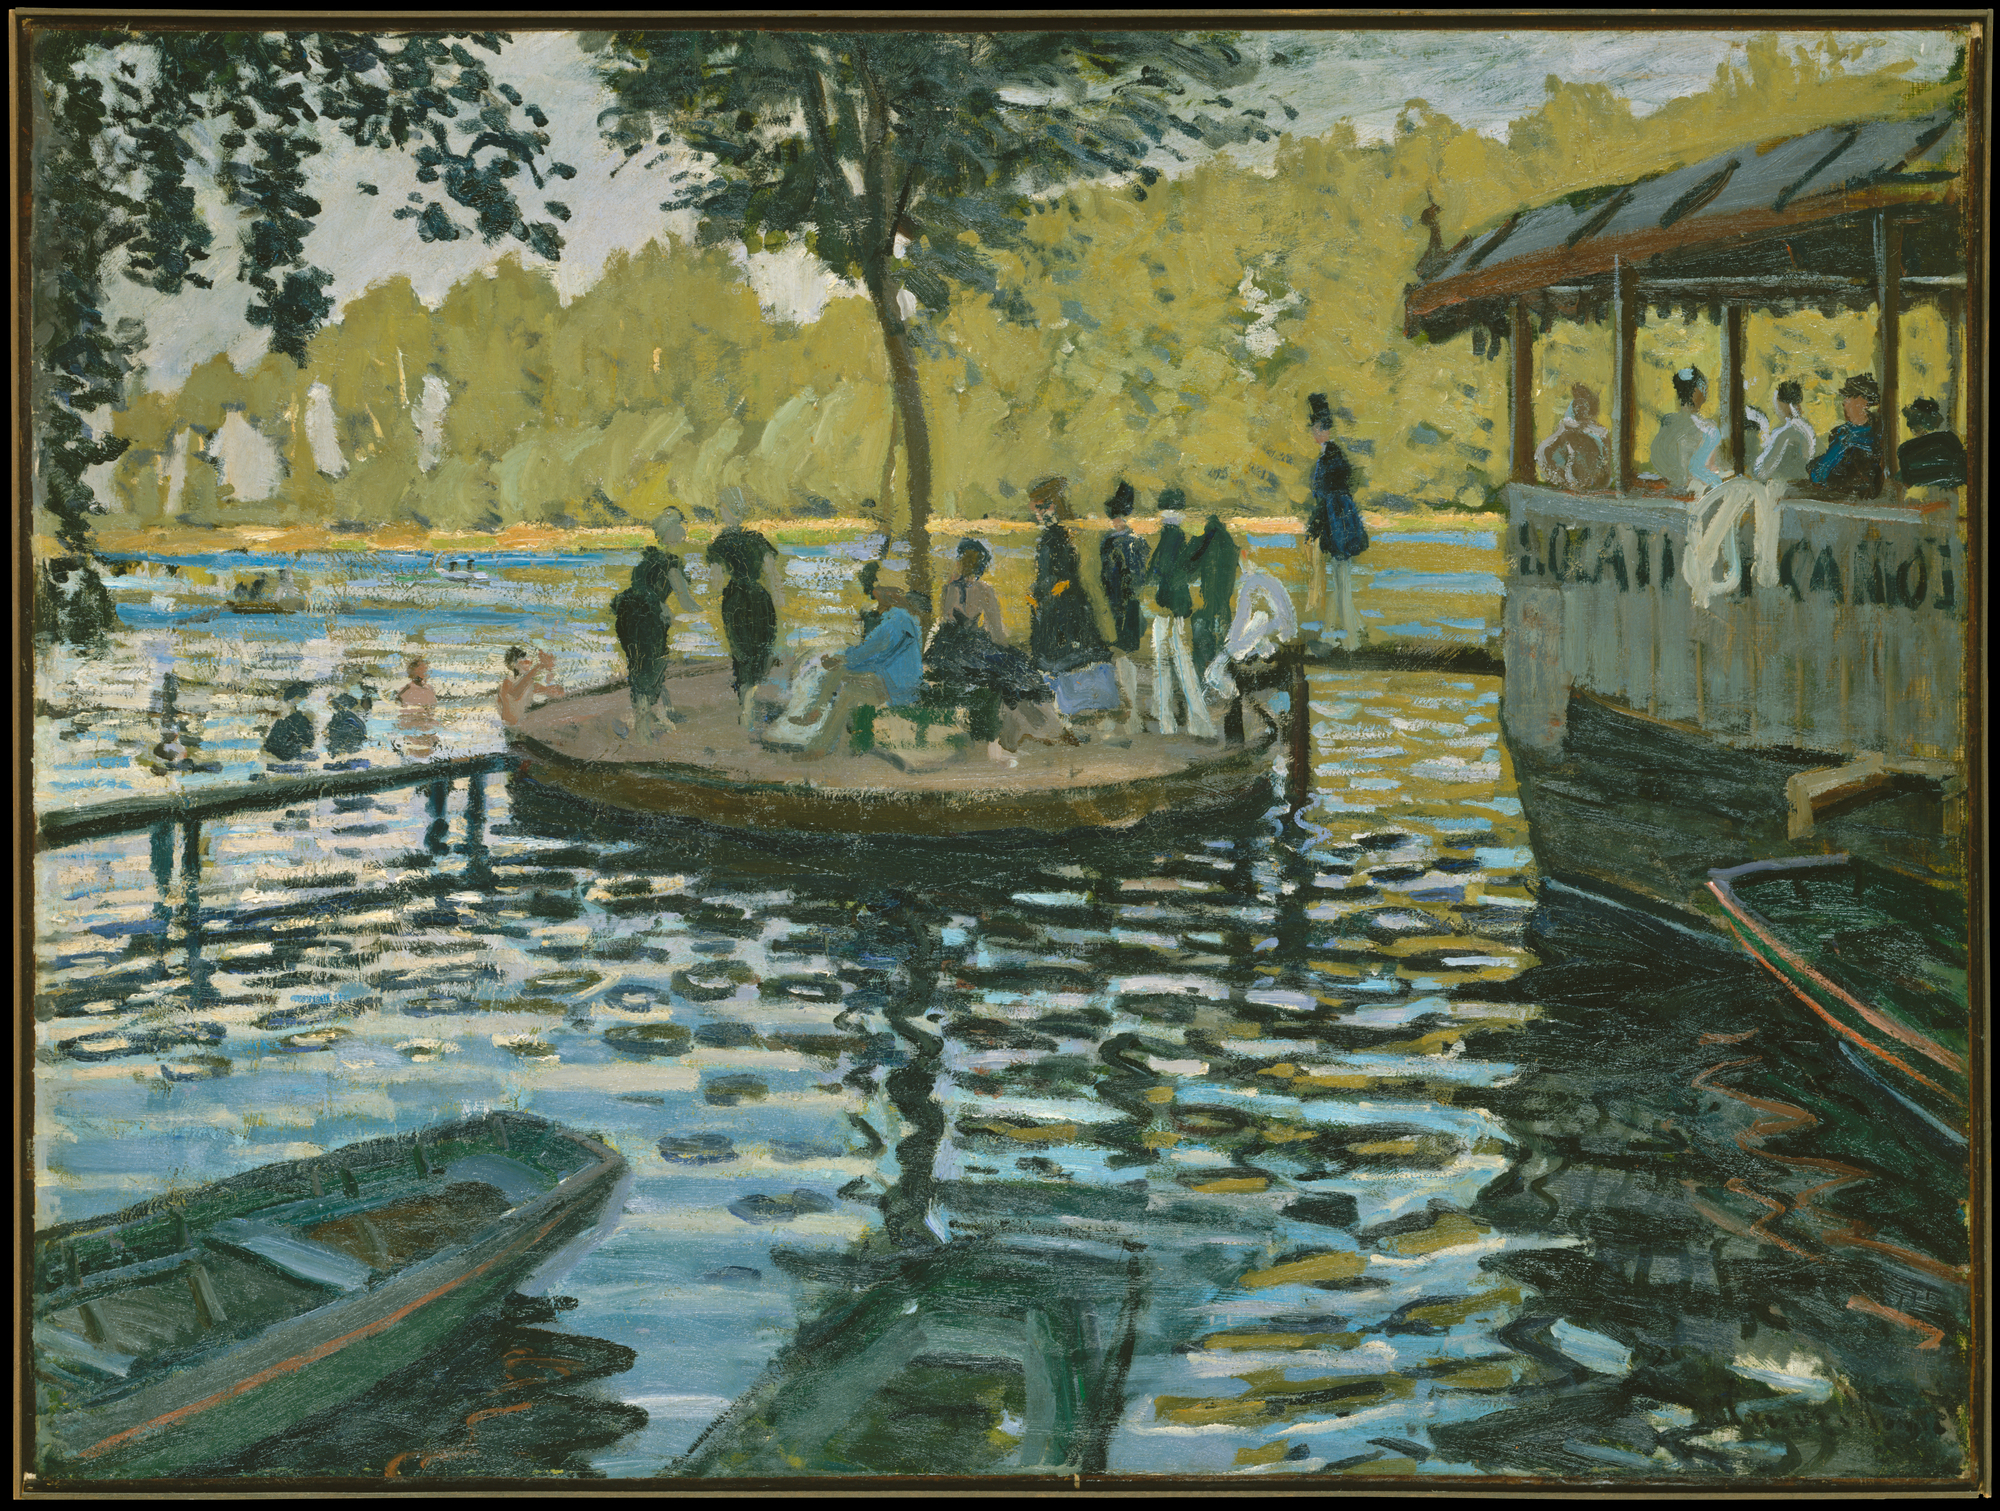 La Grenouillere. by Claude Monet - 1869 - 74.6 × 99.7 cm 